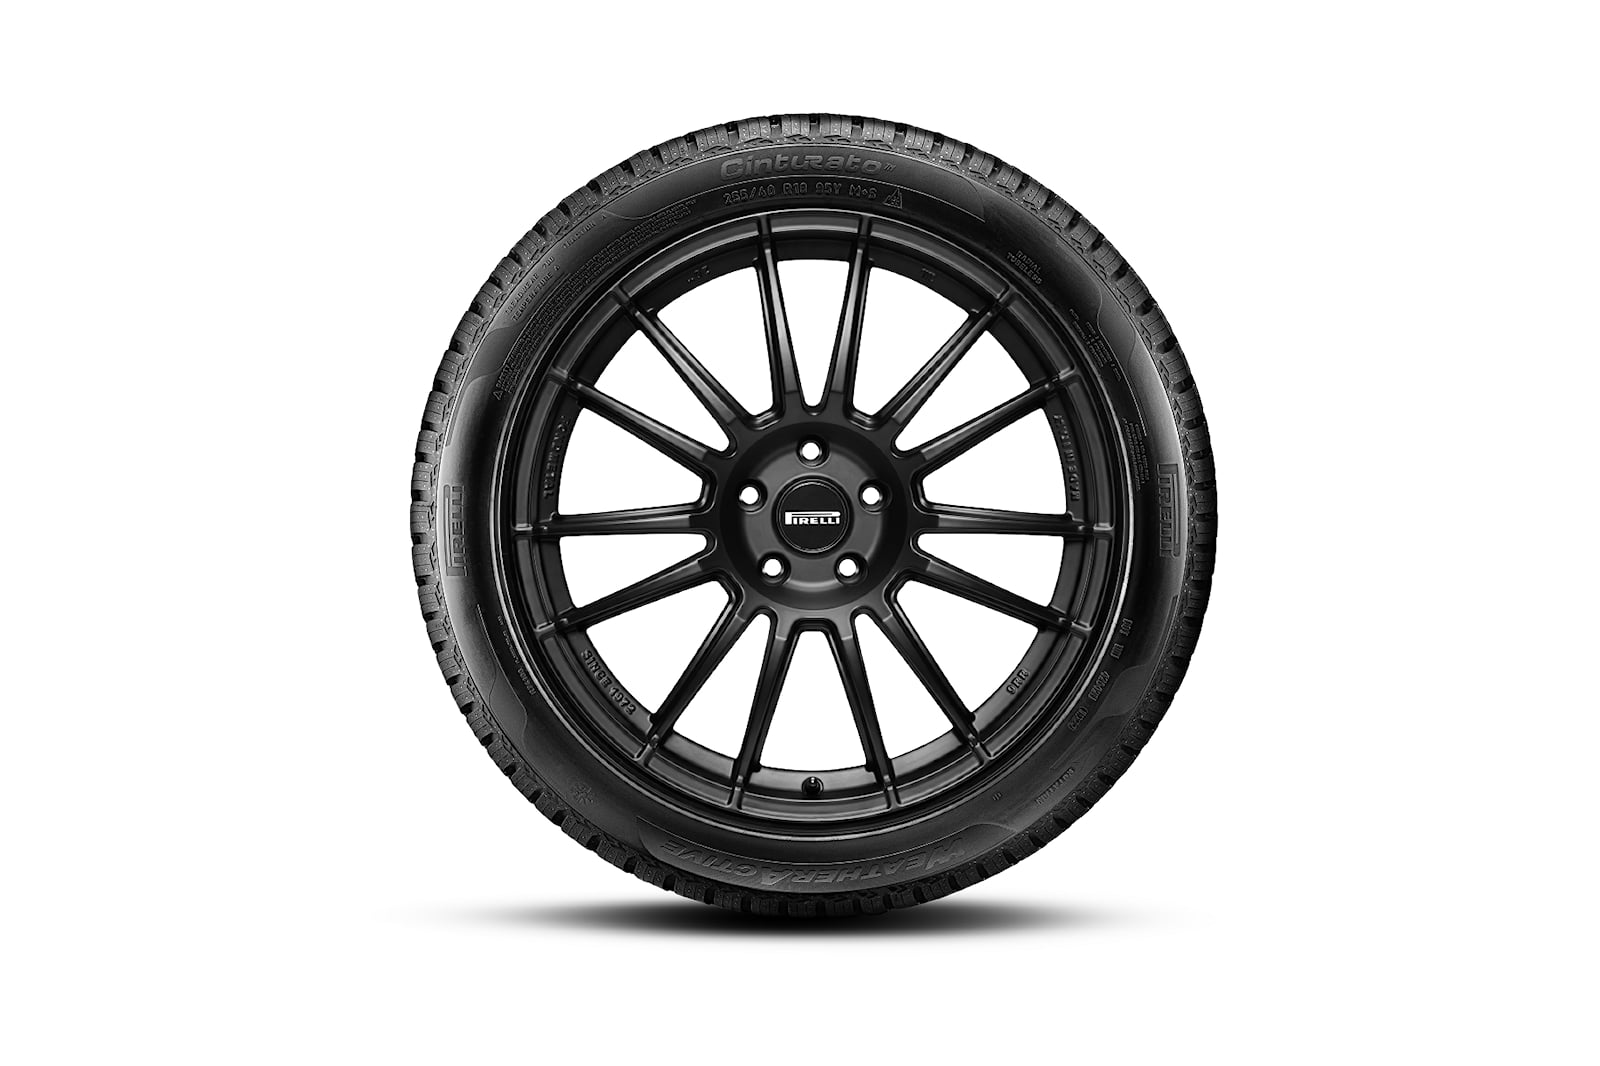 the-design-of-the-new-pirelli-centurato-tires